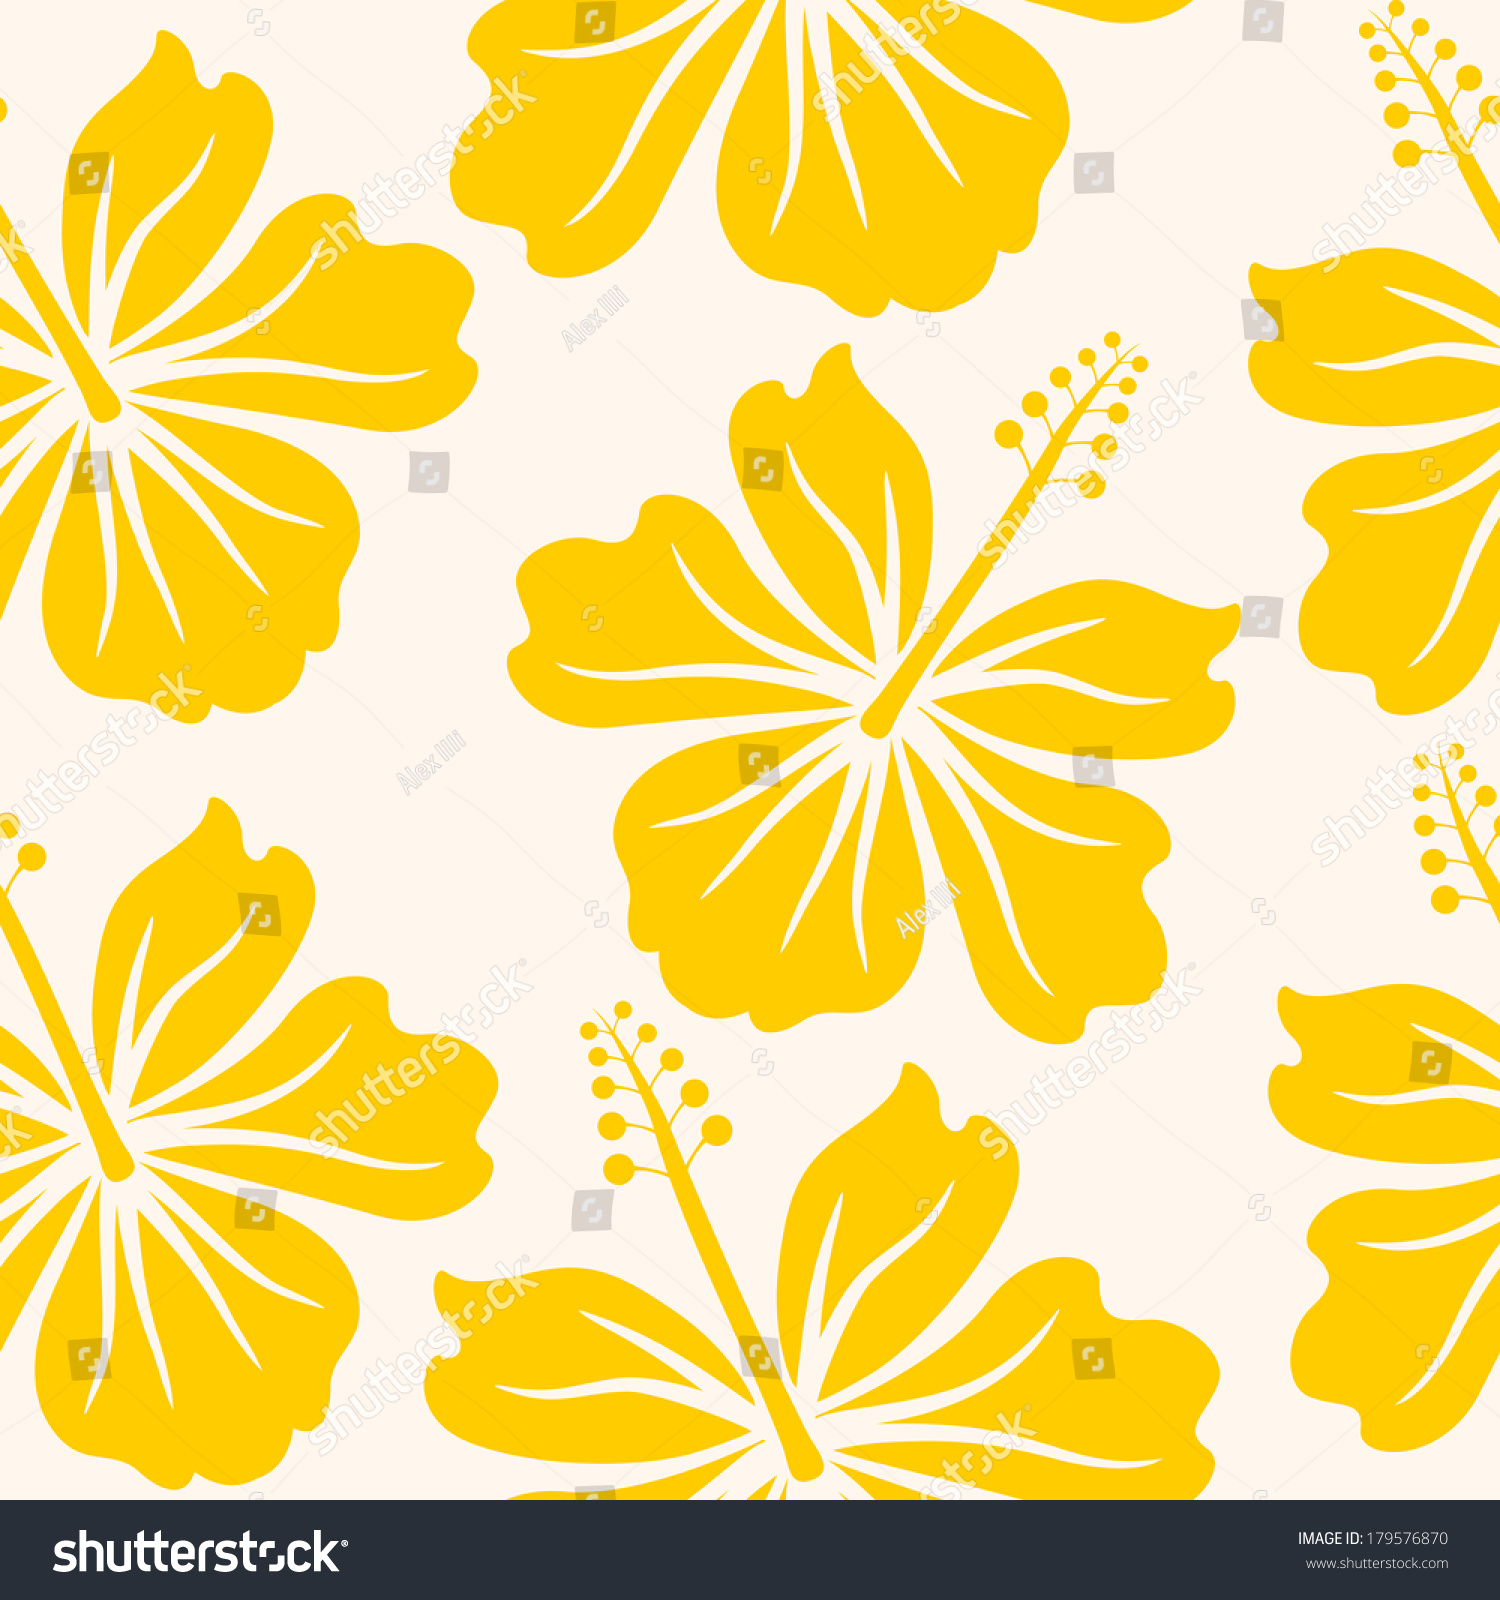 Flower Bed Stock Vector Illustration 179576870 : Shutterstock